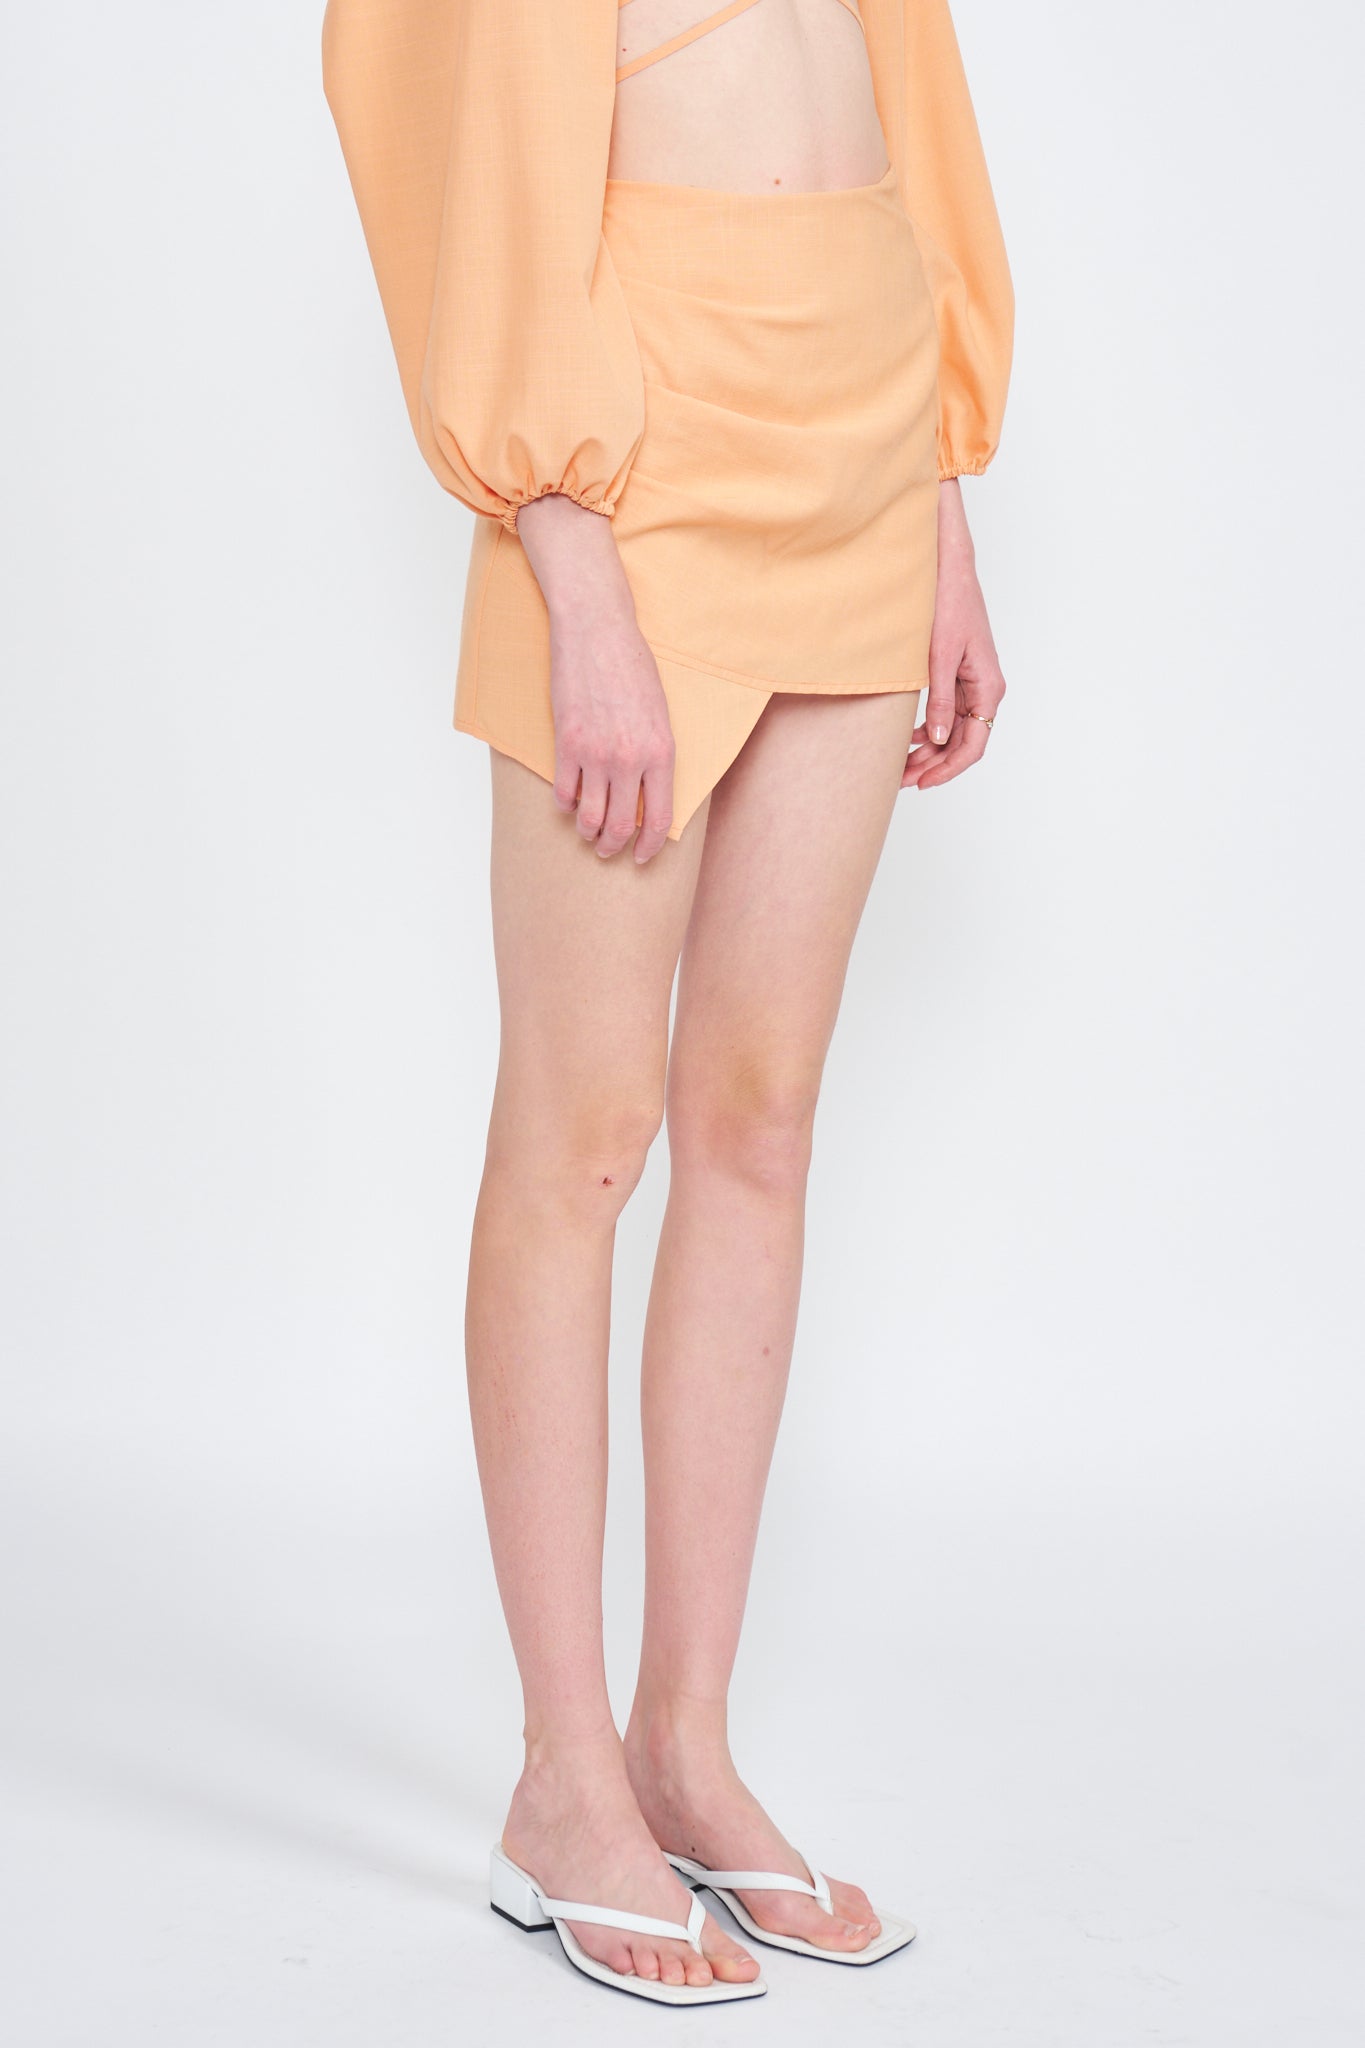 Amira Mini Skirt